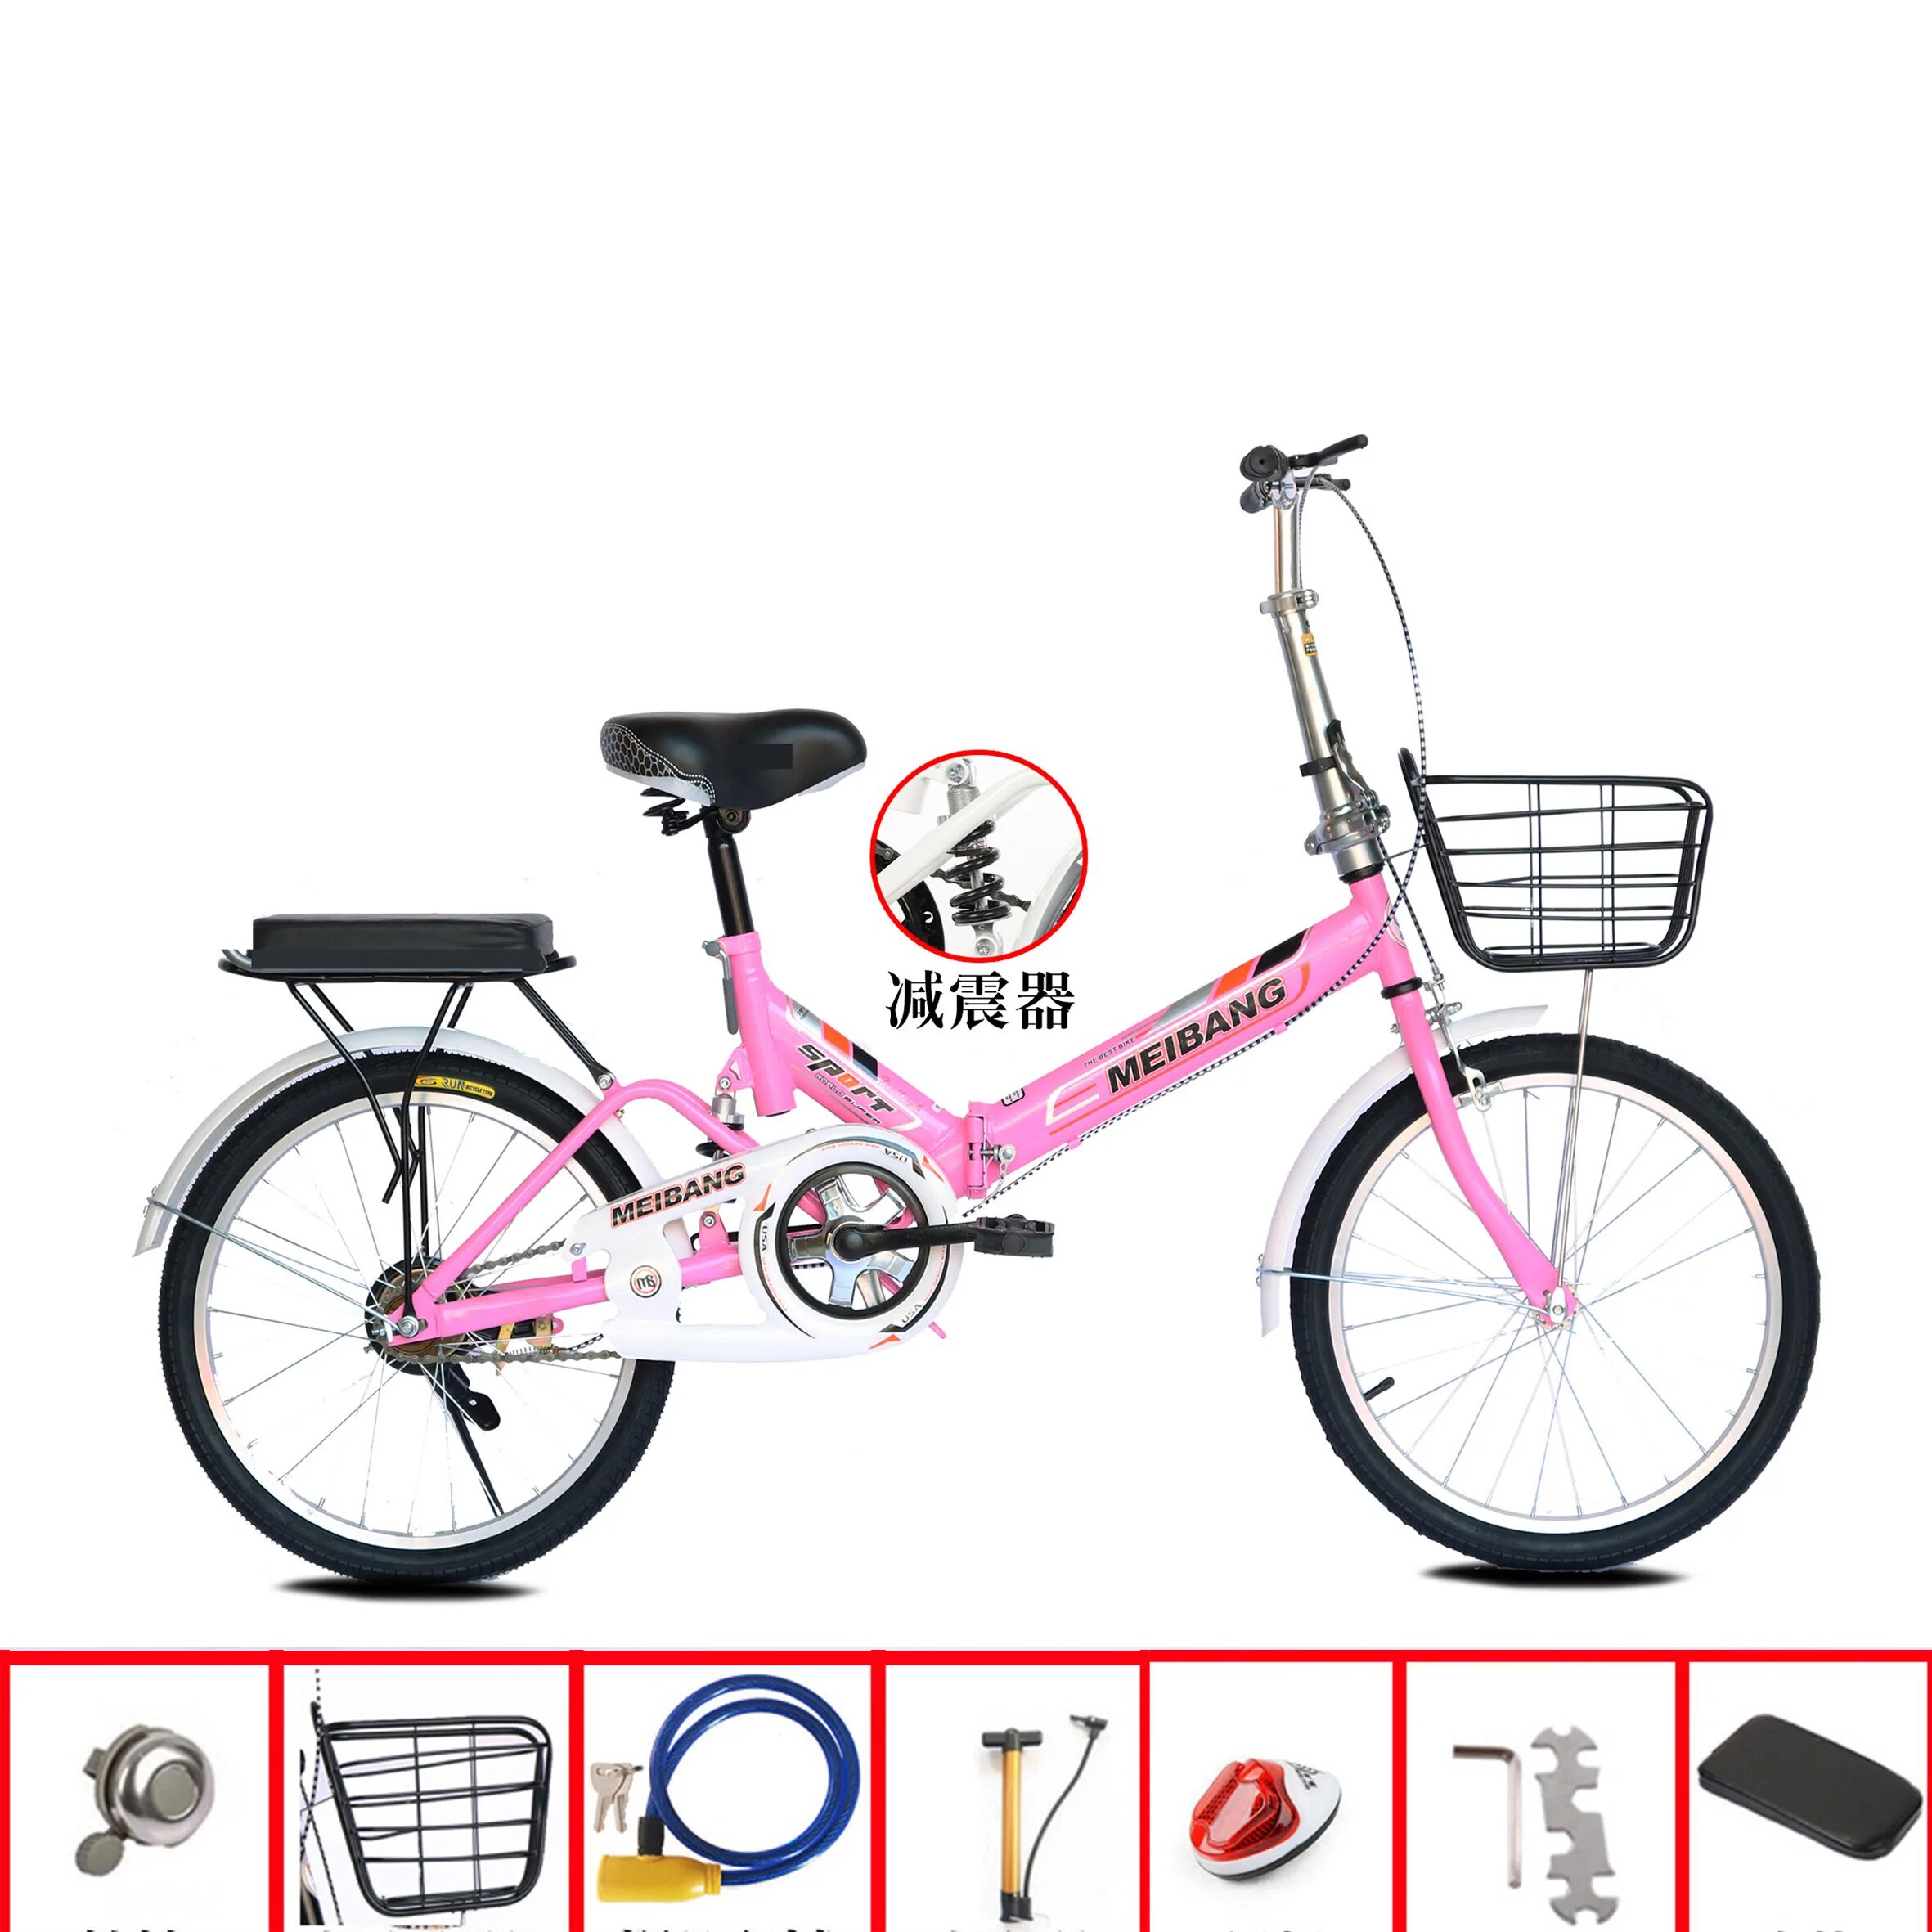 Легкие велосипеды 20. Дамский складной велосипед SPX. Велосипед женский складной легкий. Велосипед складной взрослый женский легкий. Велосипед женский легкий складной маленький.